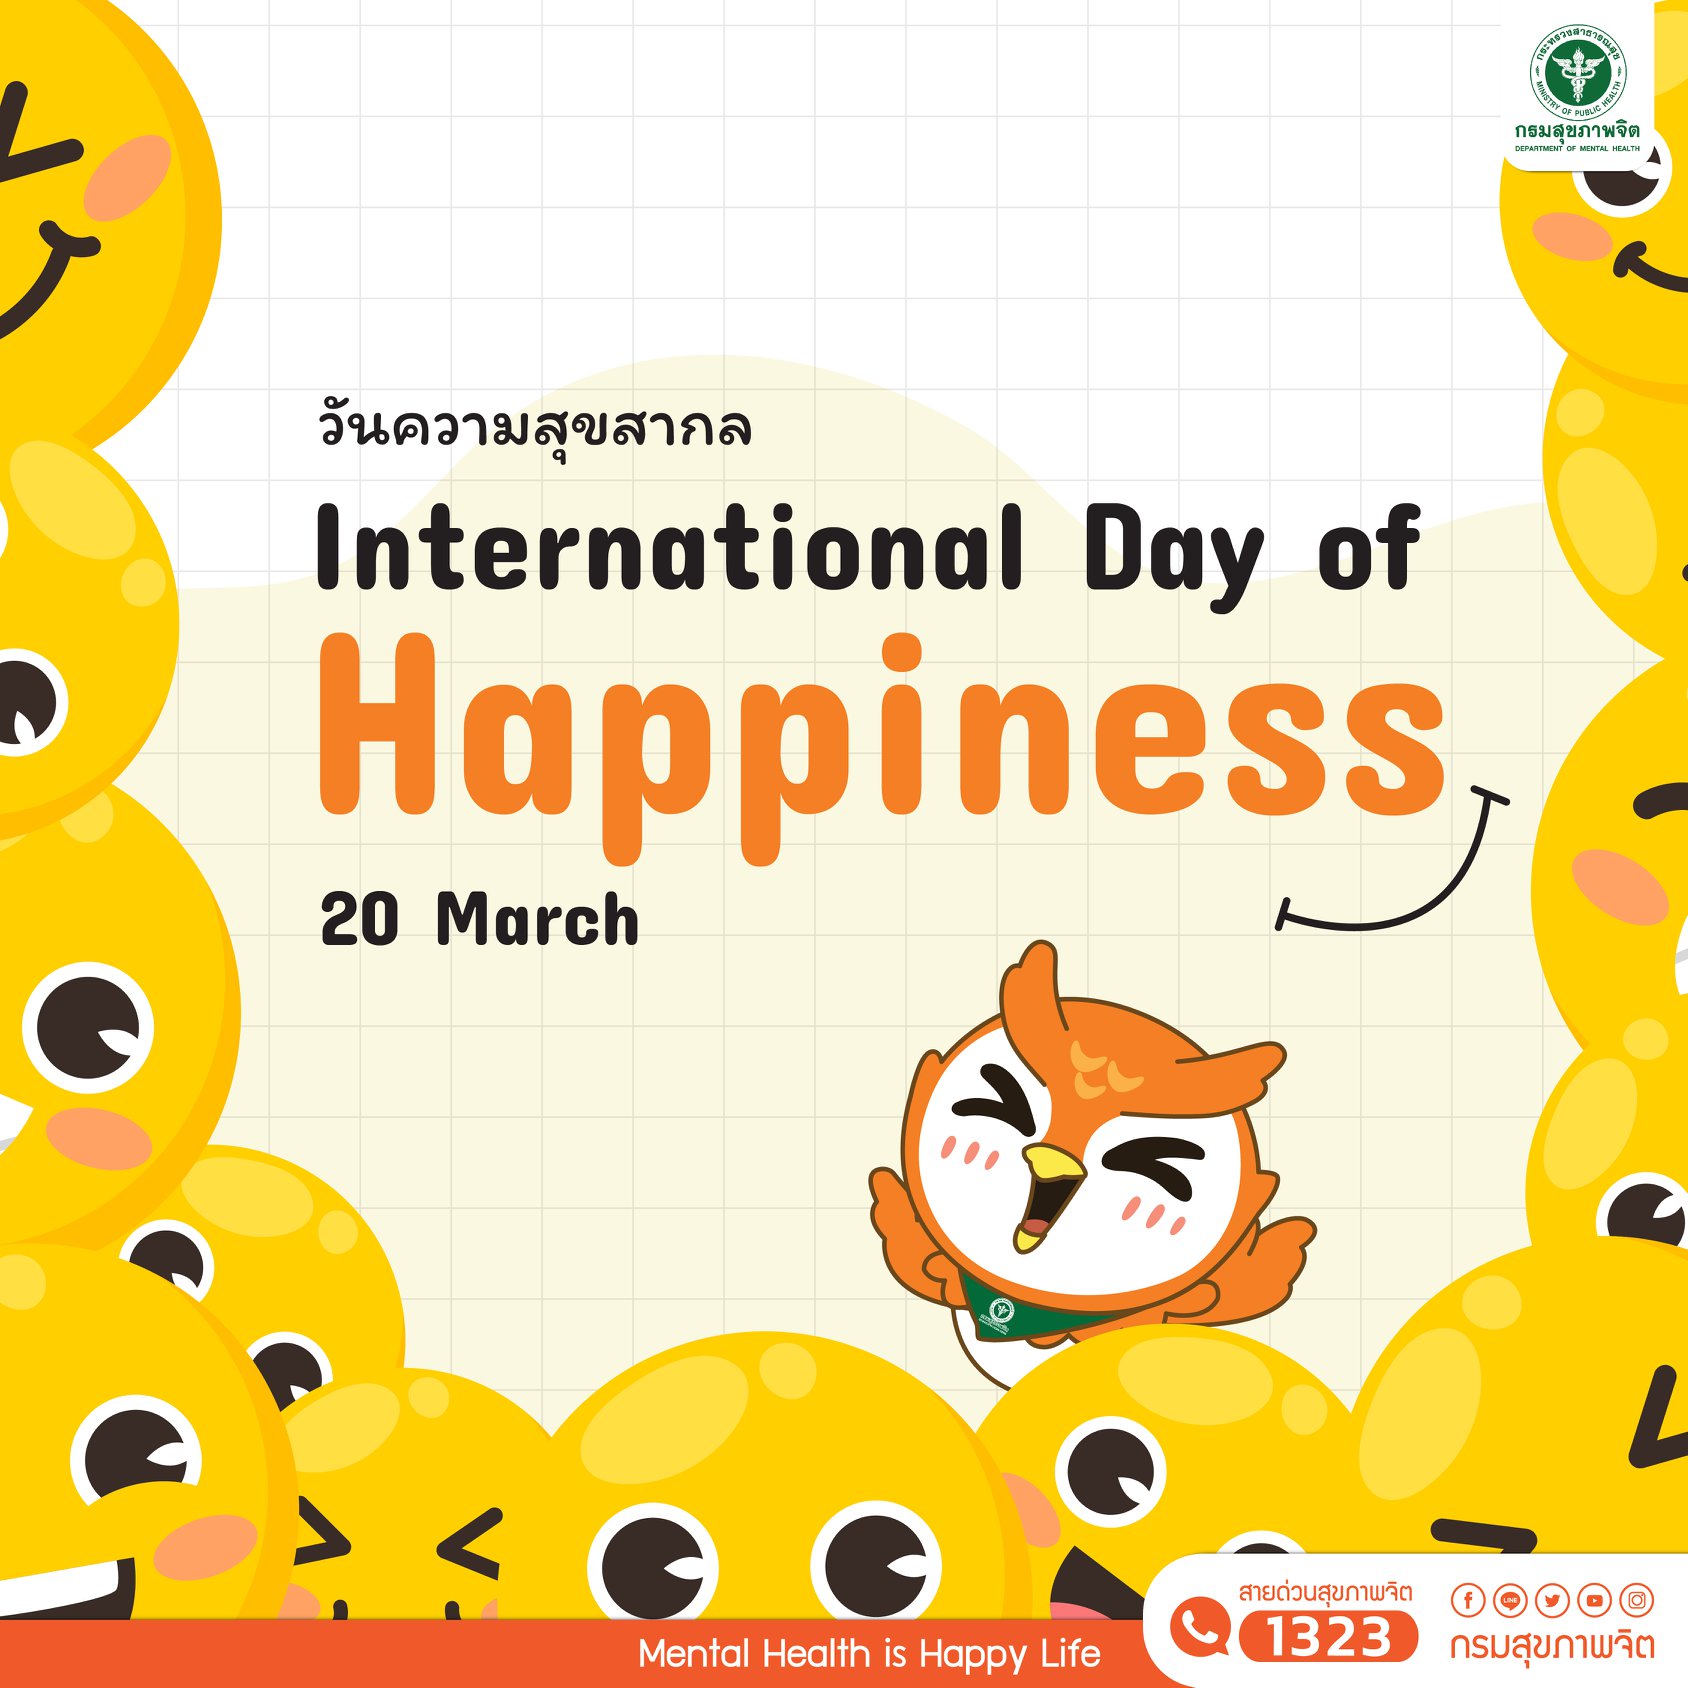 20 มีนาคม วันความสุขสากล (International Day of Happiness)